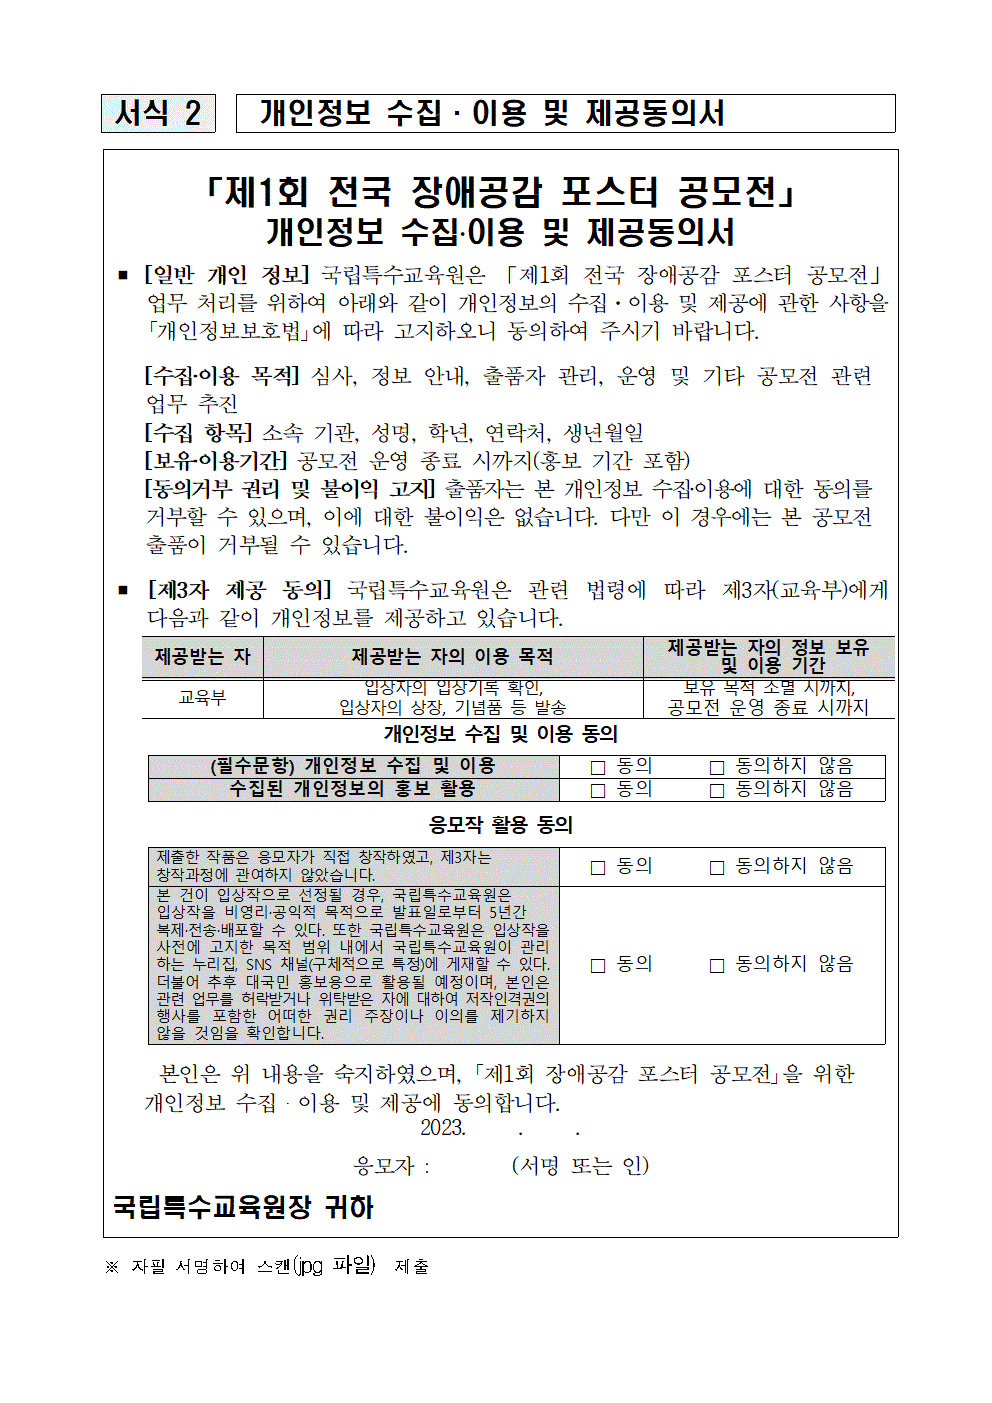 2023. 제1회 전국 장애공감 포스터 공모전 안내 가정통신문003